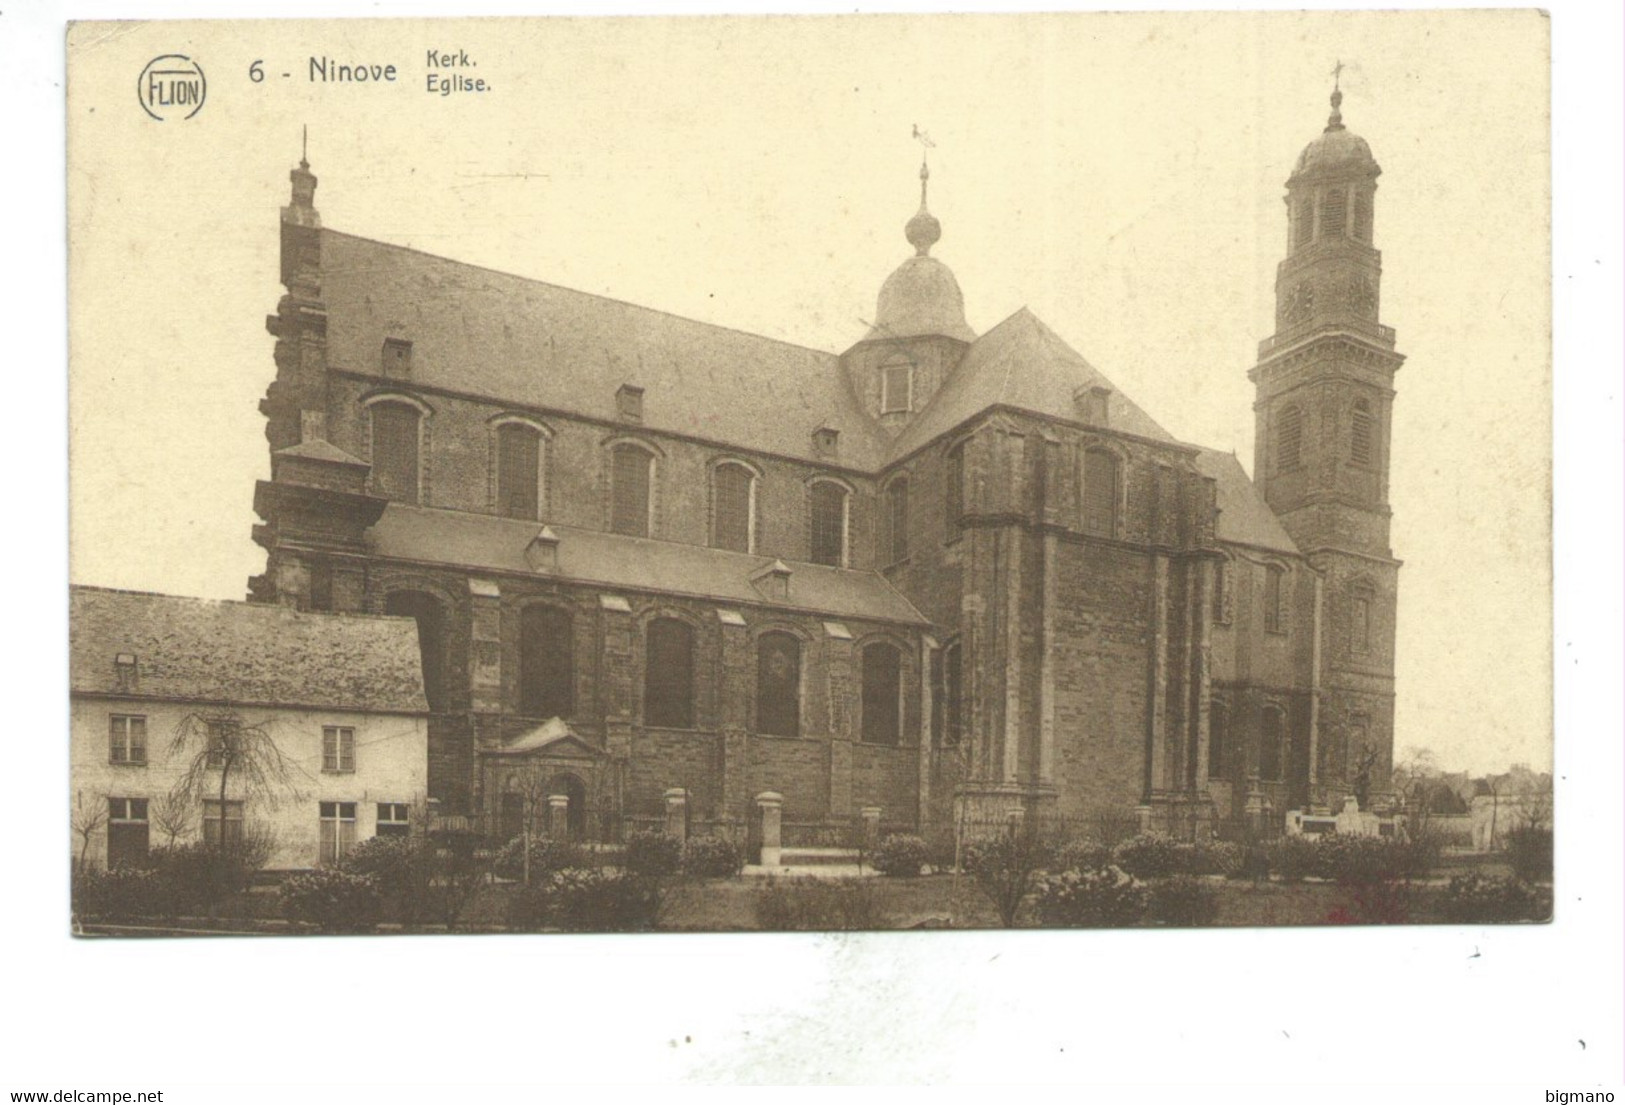 Ninove Kerk - Ninove